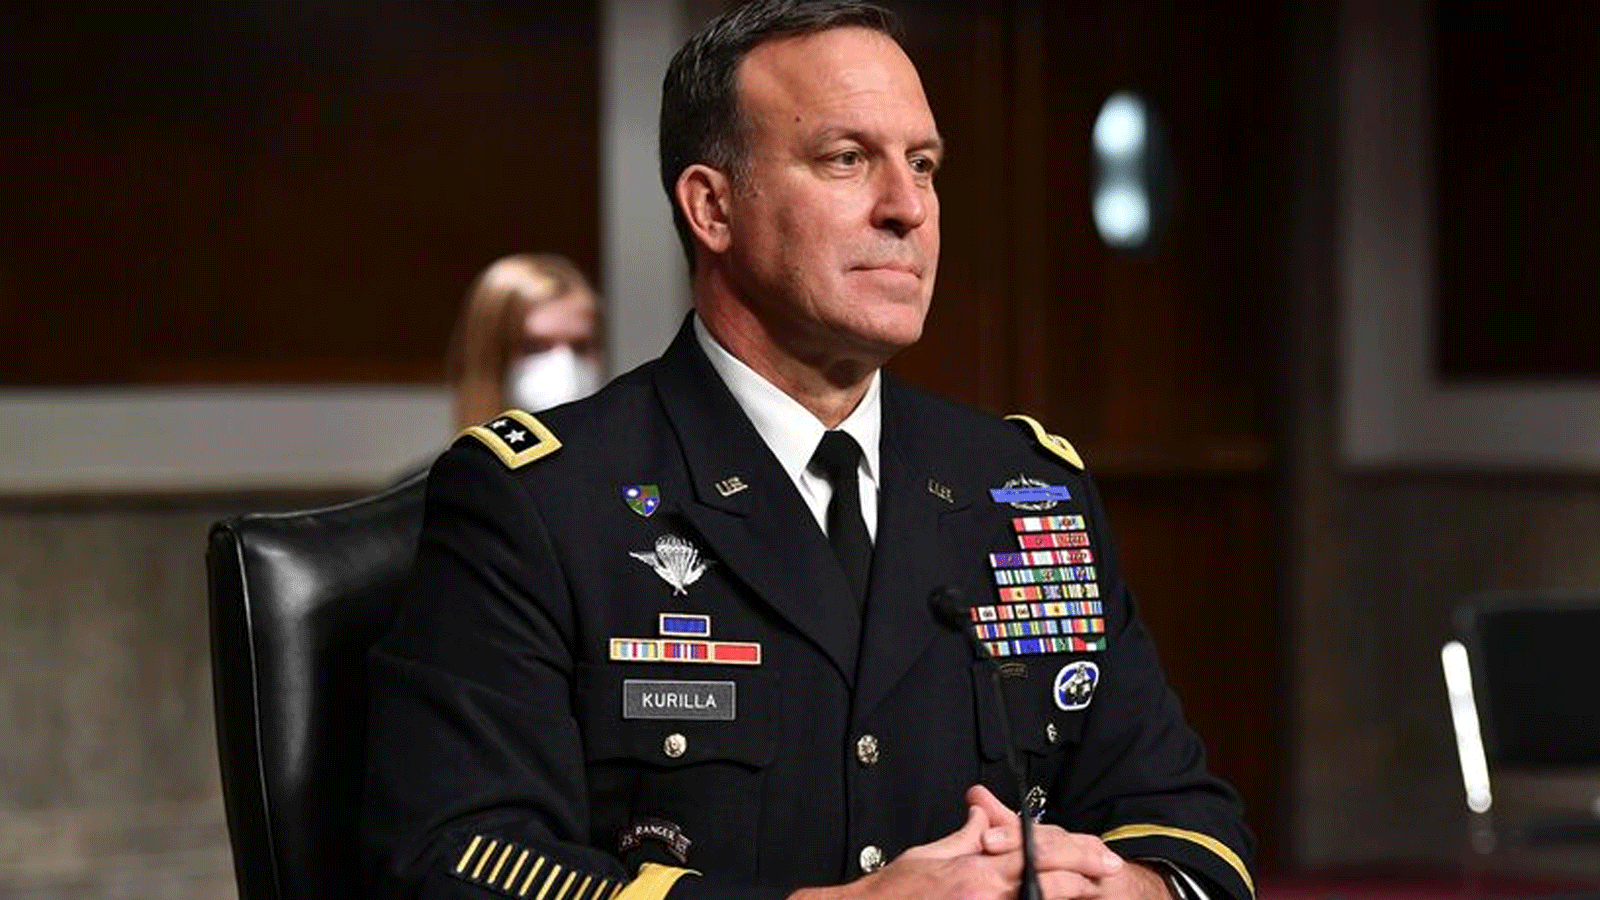 الجنرال بالجيش الأميركي مايكل كوريلا